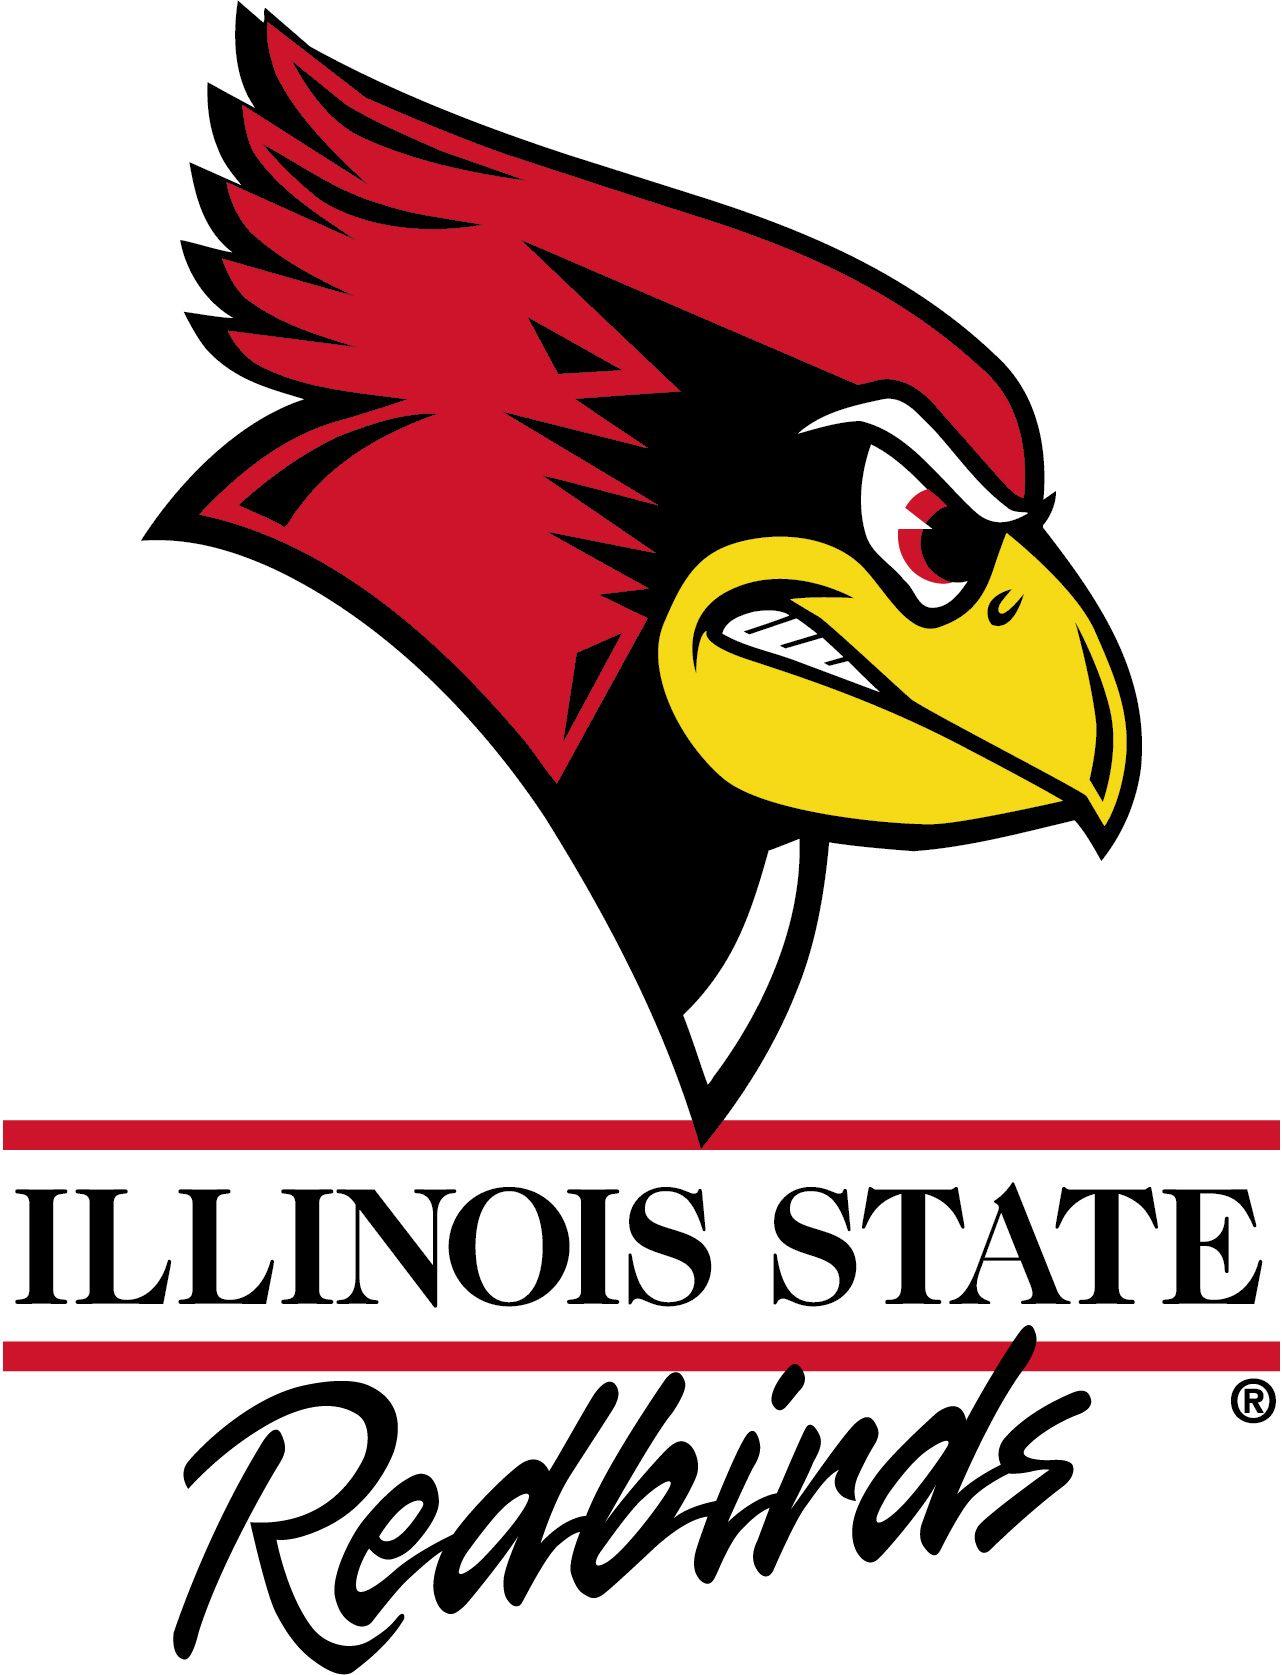 ISU Redbird Logo - Illinois State University Alumni - BS History, Minor Women's Studies ...